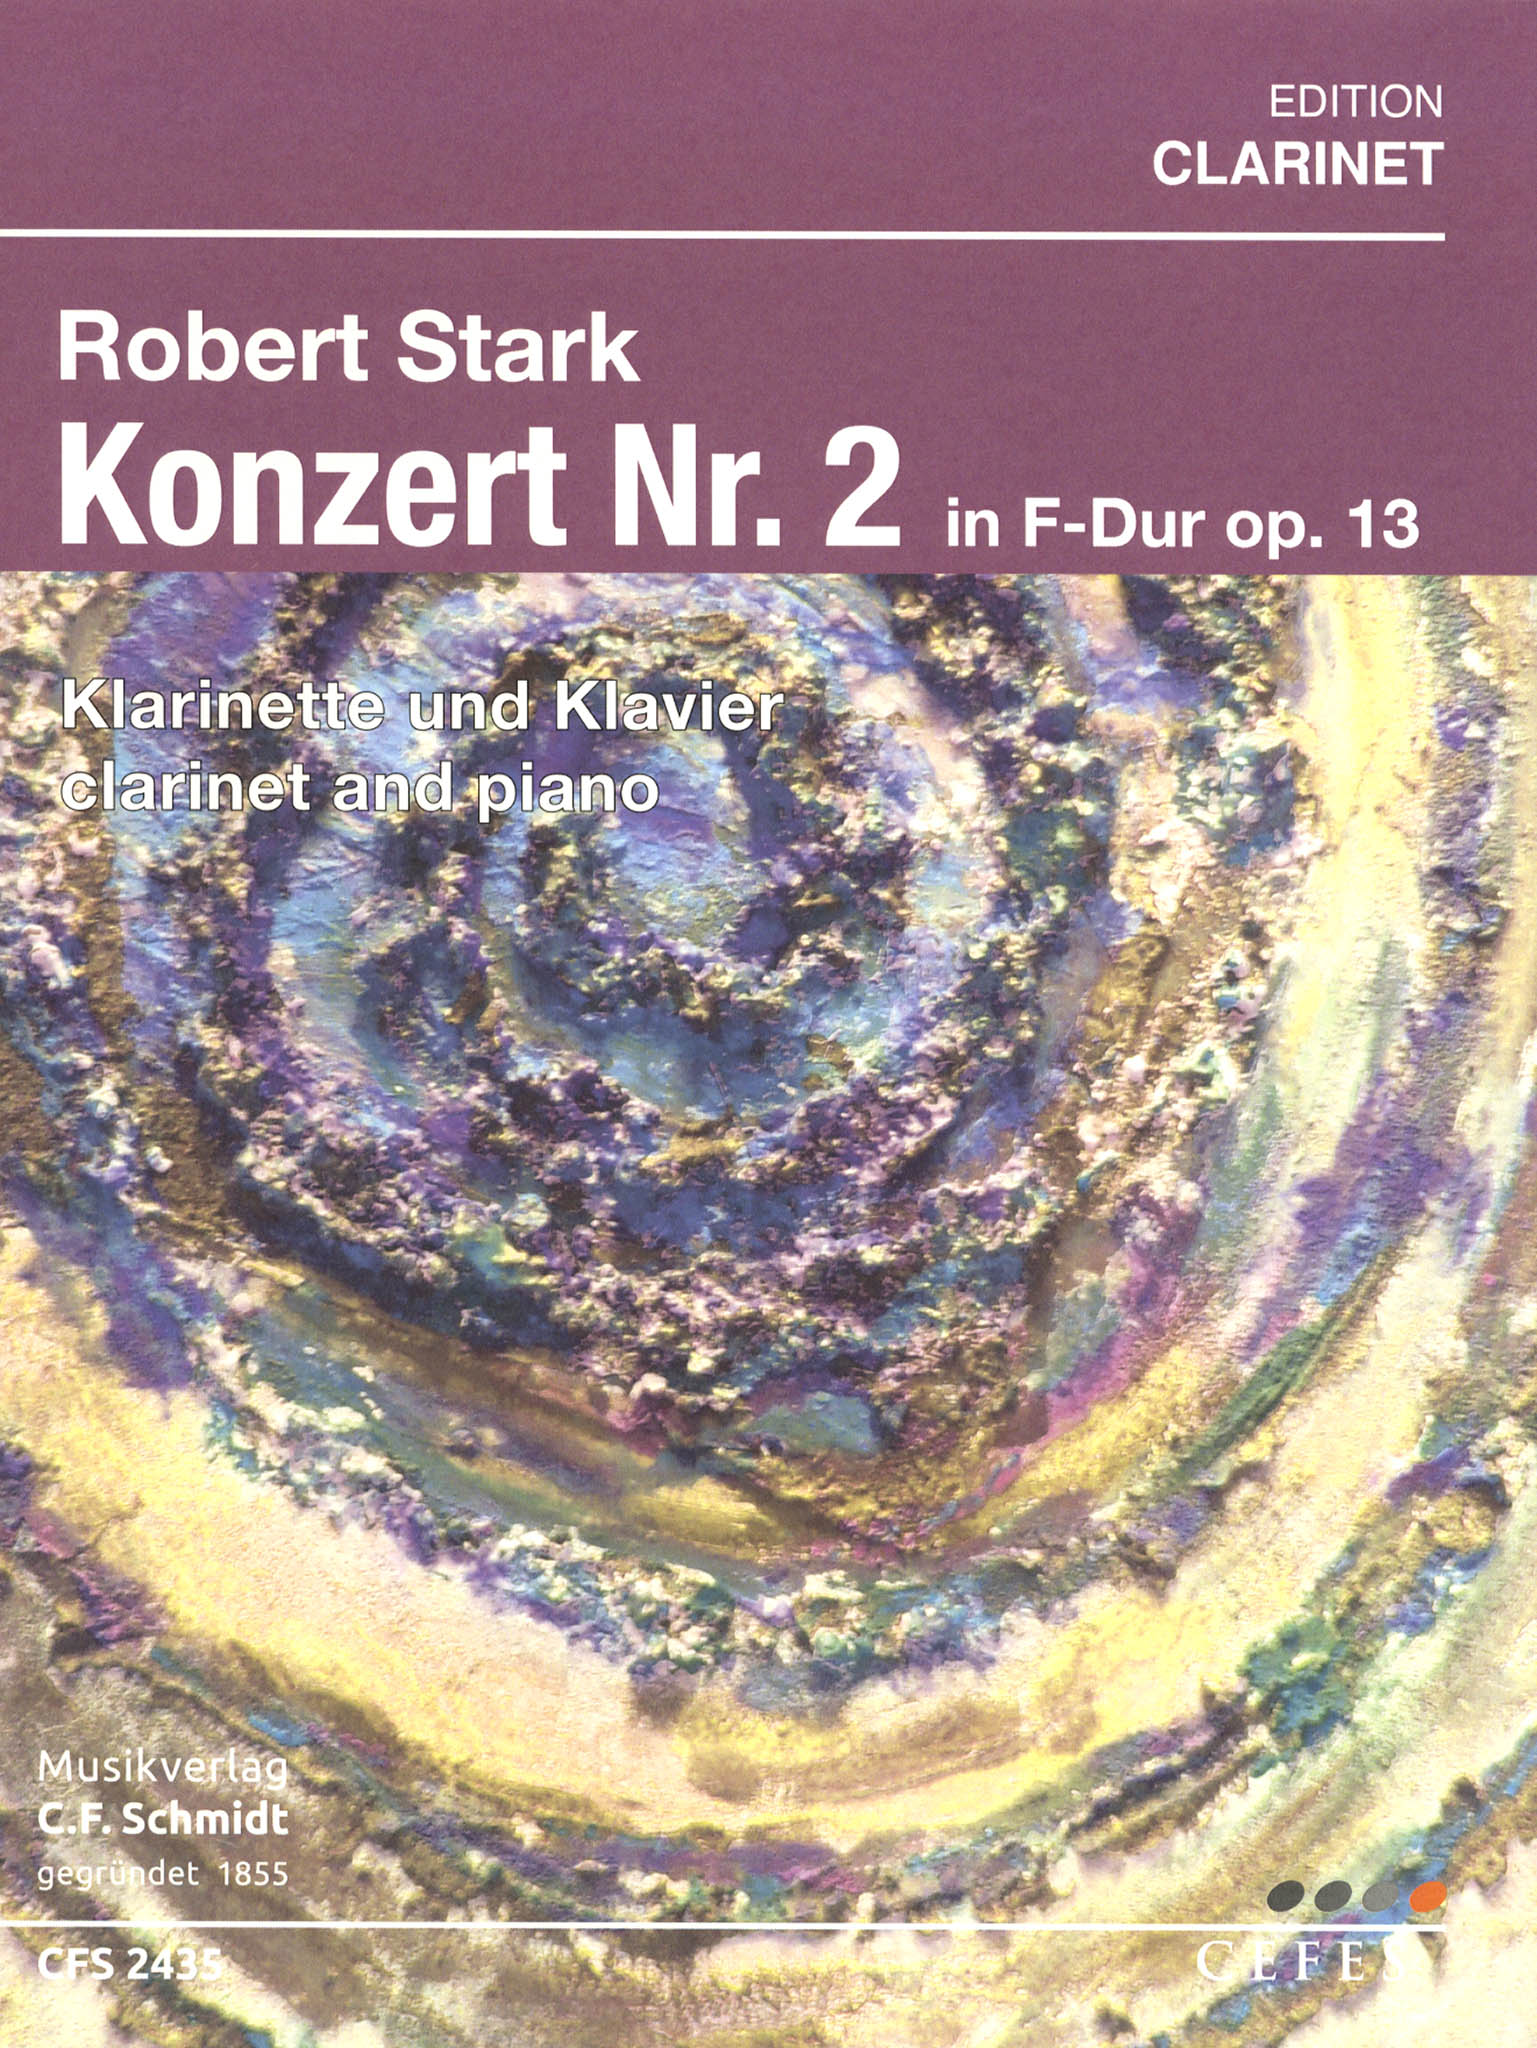 Clarinet Concerto No. 2 in F Major, Op. 13 Cover